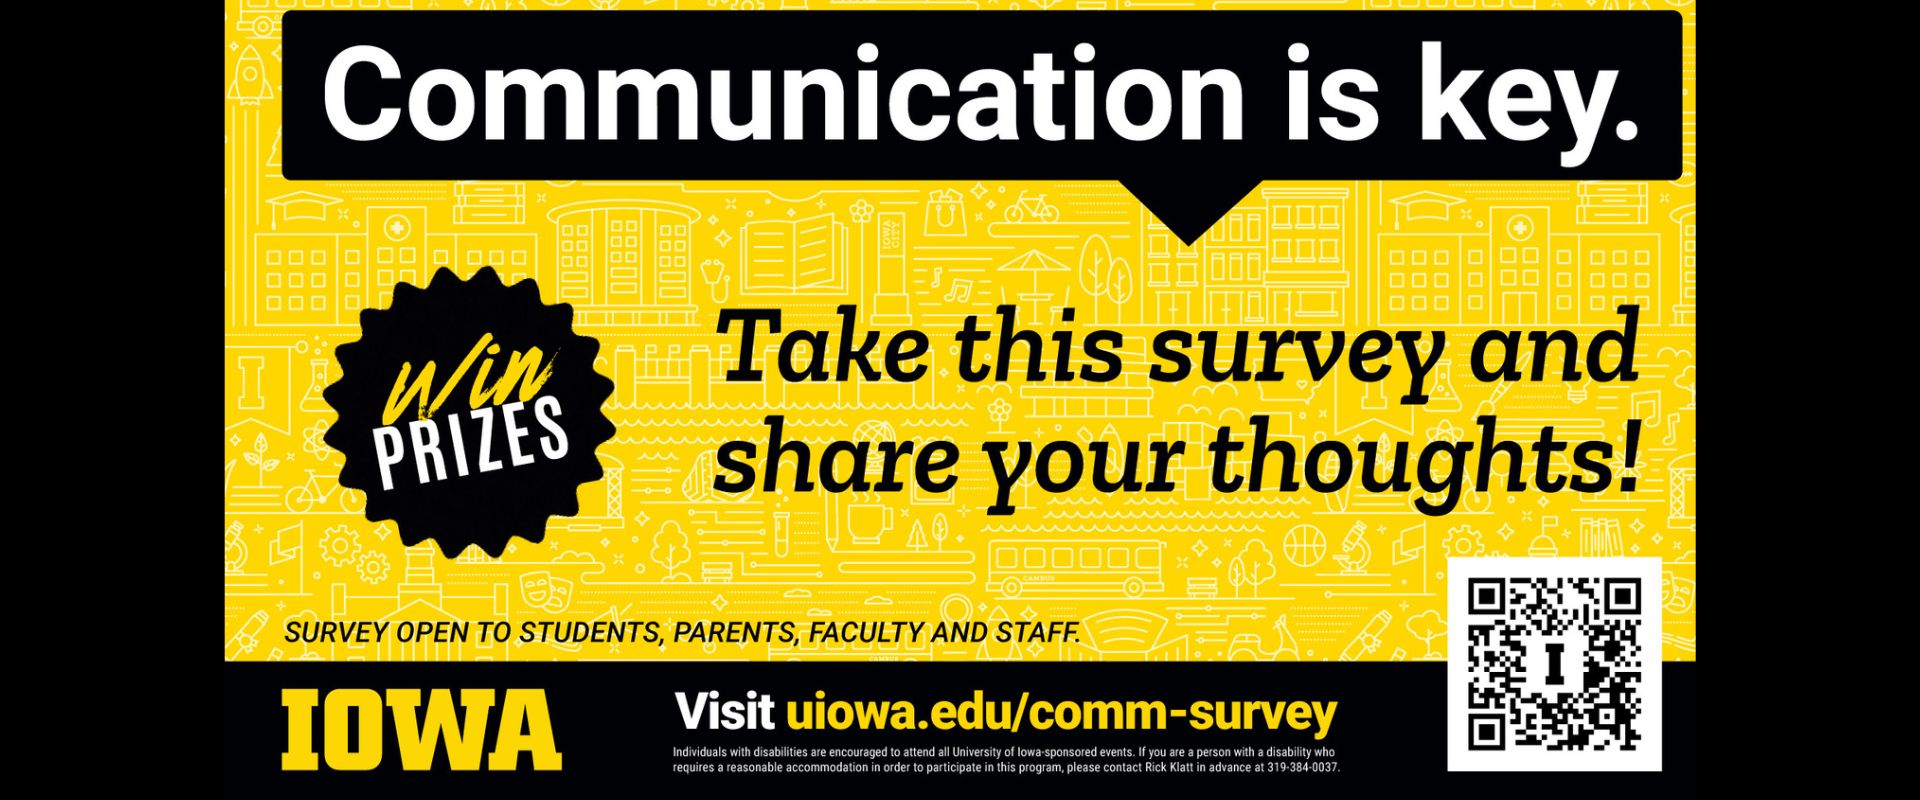 Communications Survey uiowa.edu/comm-survey